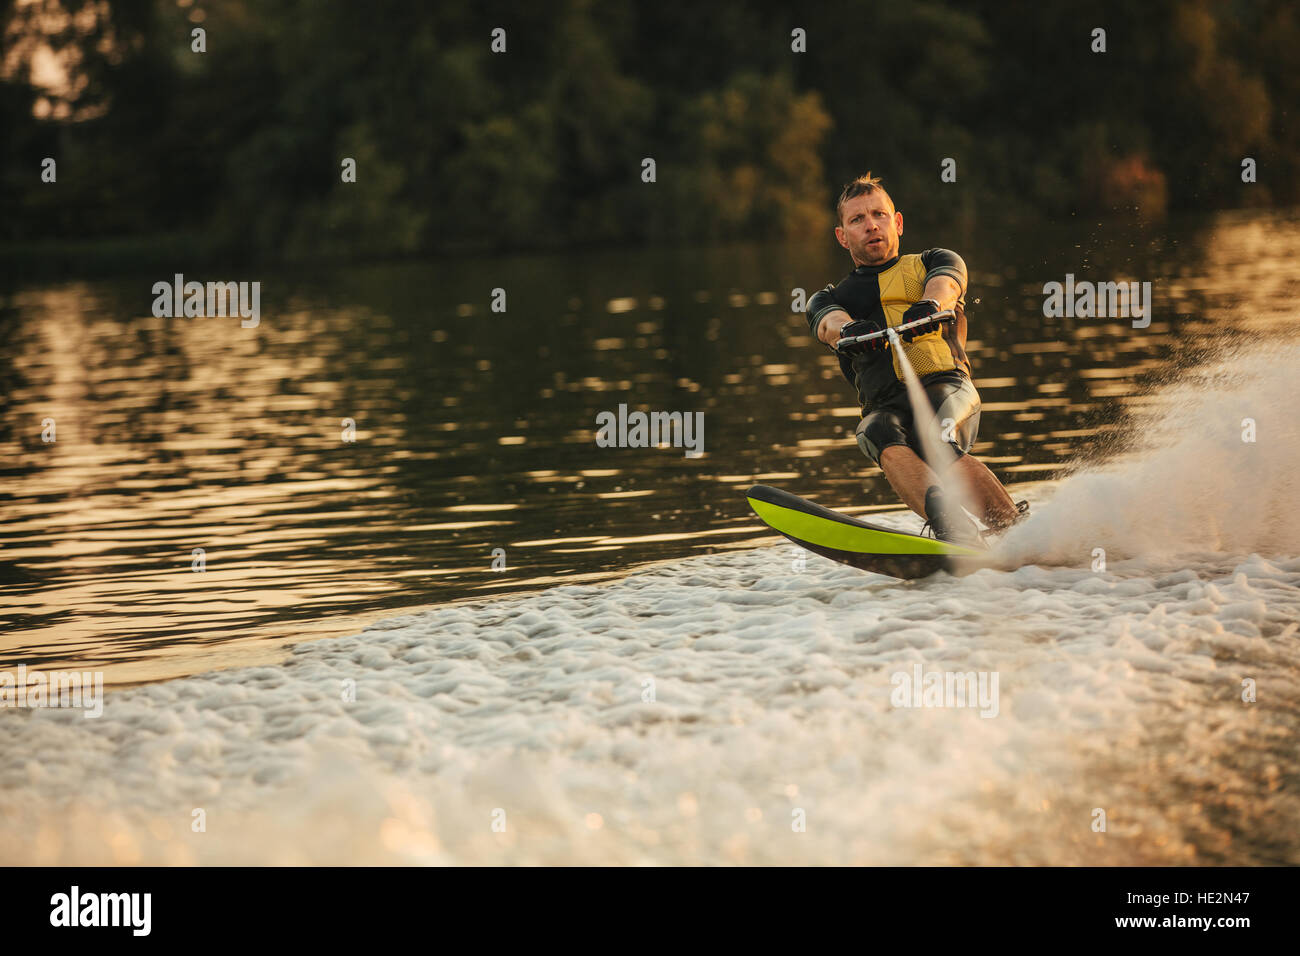 Mann reitet Wakeboard auf Welle der Motorboot in einem See. Männliche Wasserski hinter einem Boot. Stockfoto